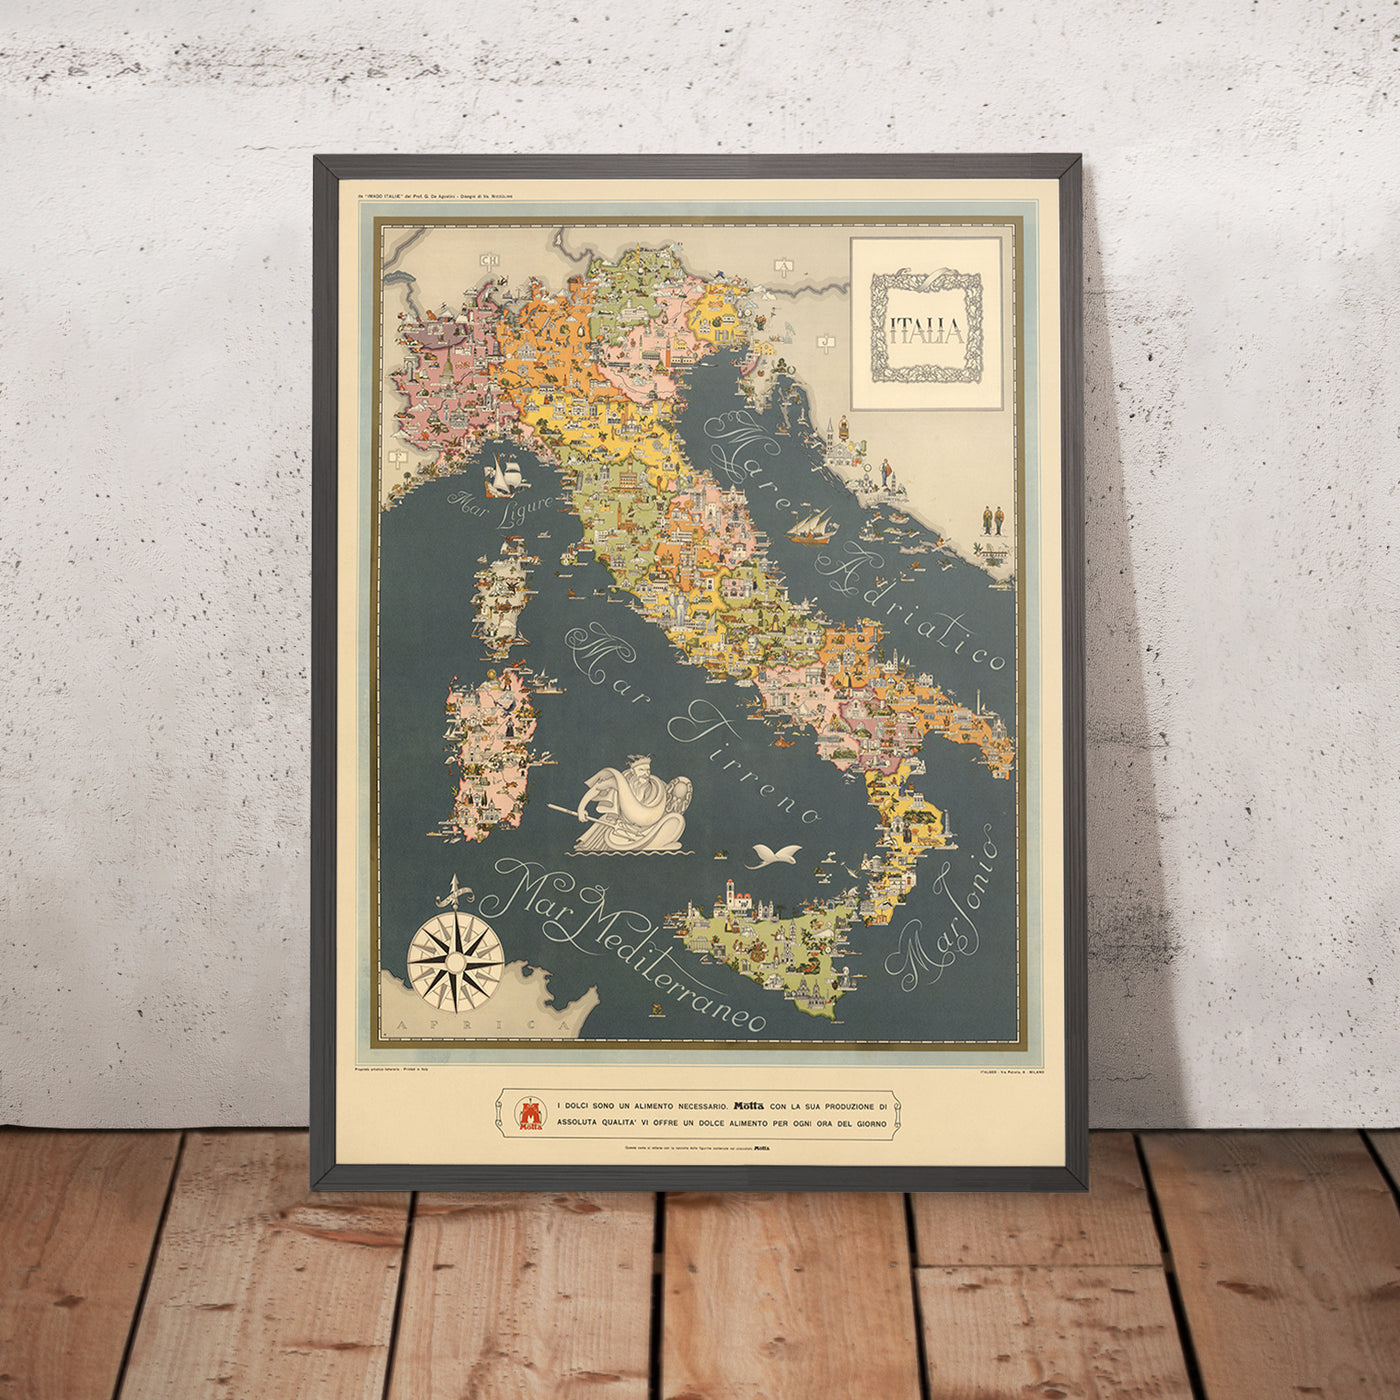 Antiguo mapa de Italia de De Agostini, 1938: Roma, Milán, Venecia, Alpes, era fascista